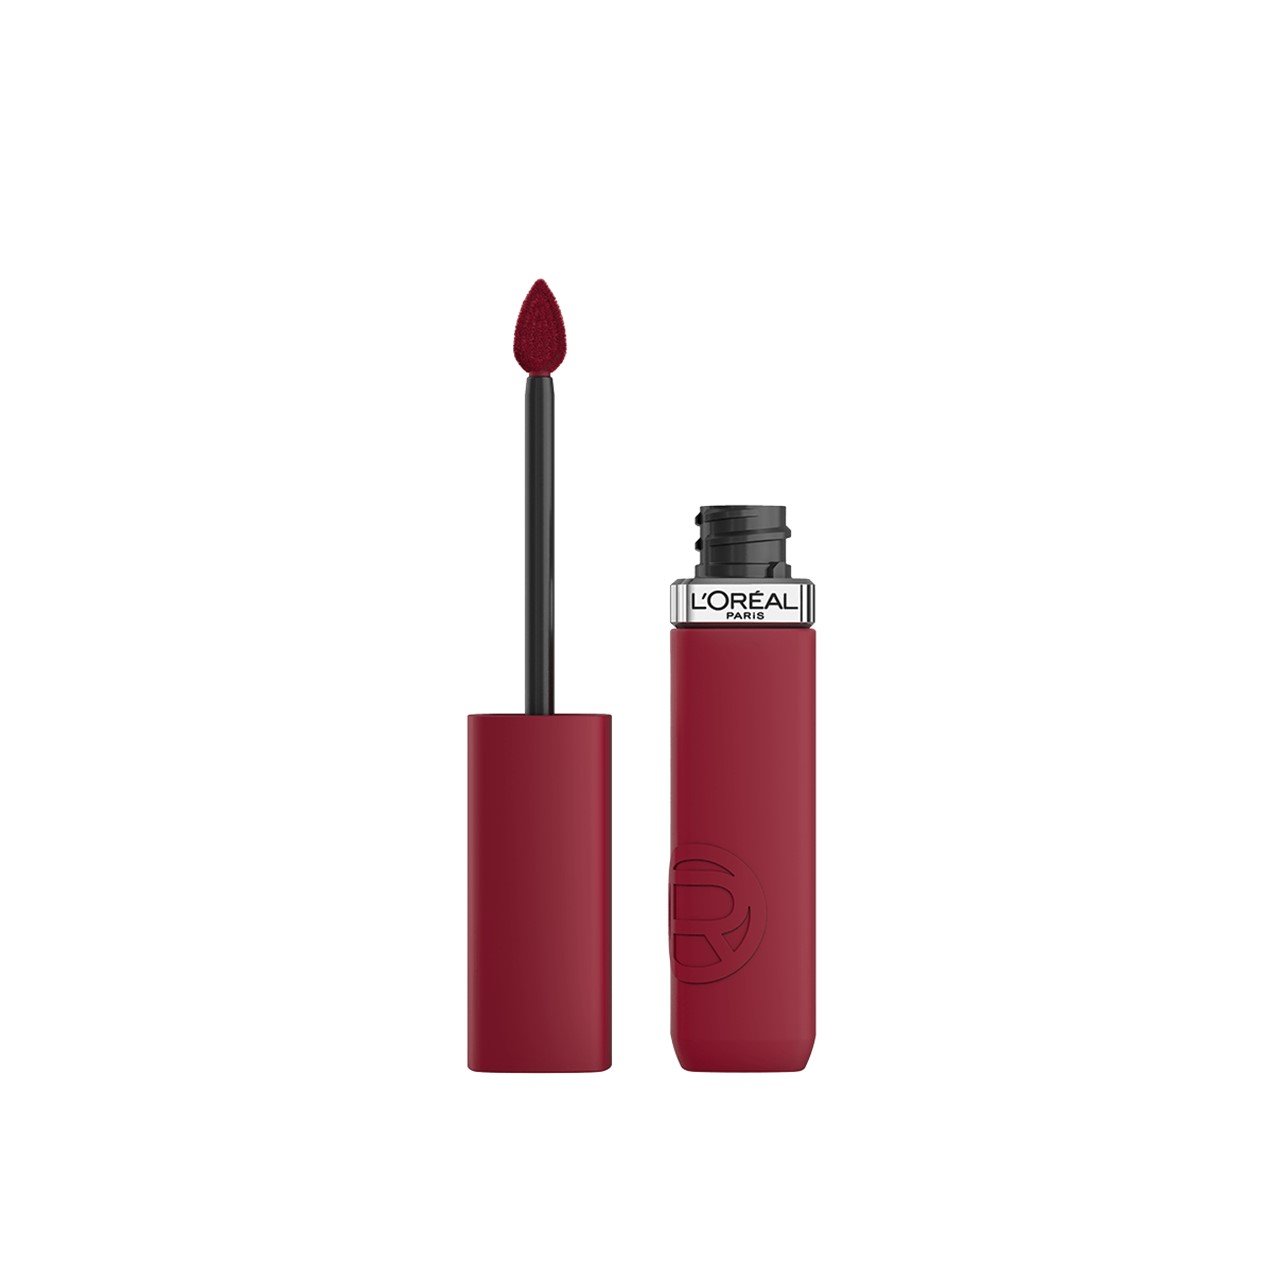 L'Oréal Paris Infallible Matte Resistance Liquid Lipstick 500 Wine Not 5ml (0.17 fl oz)